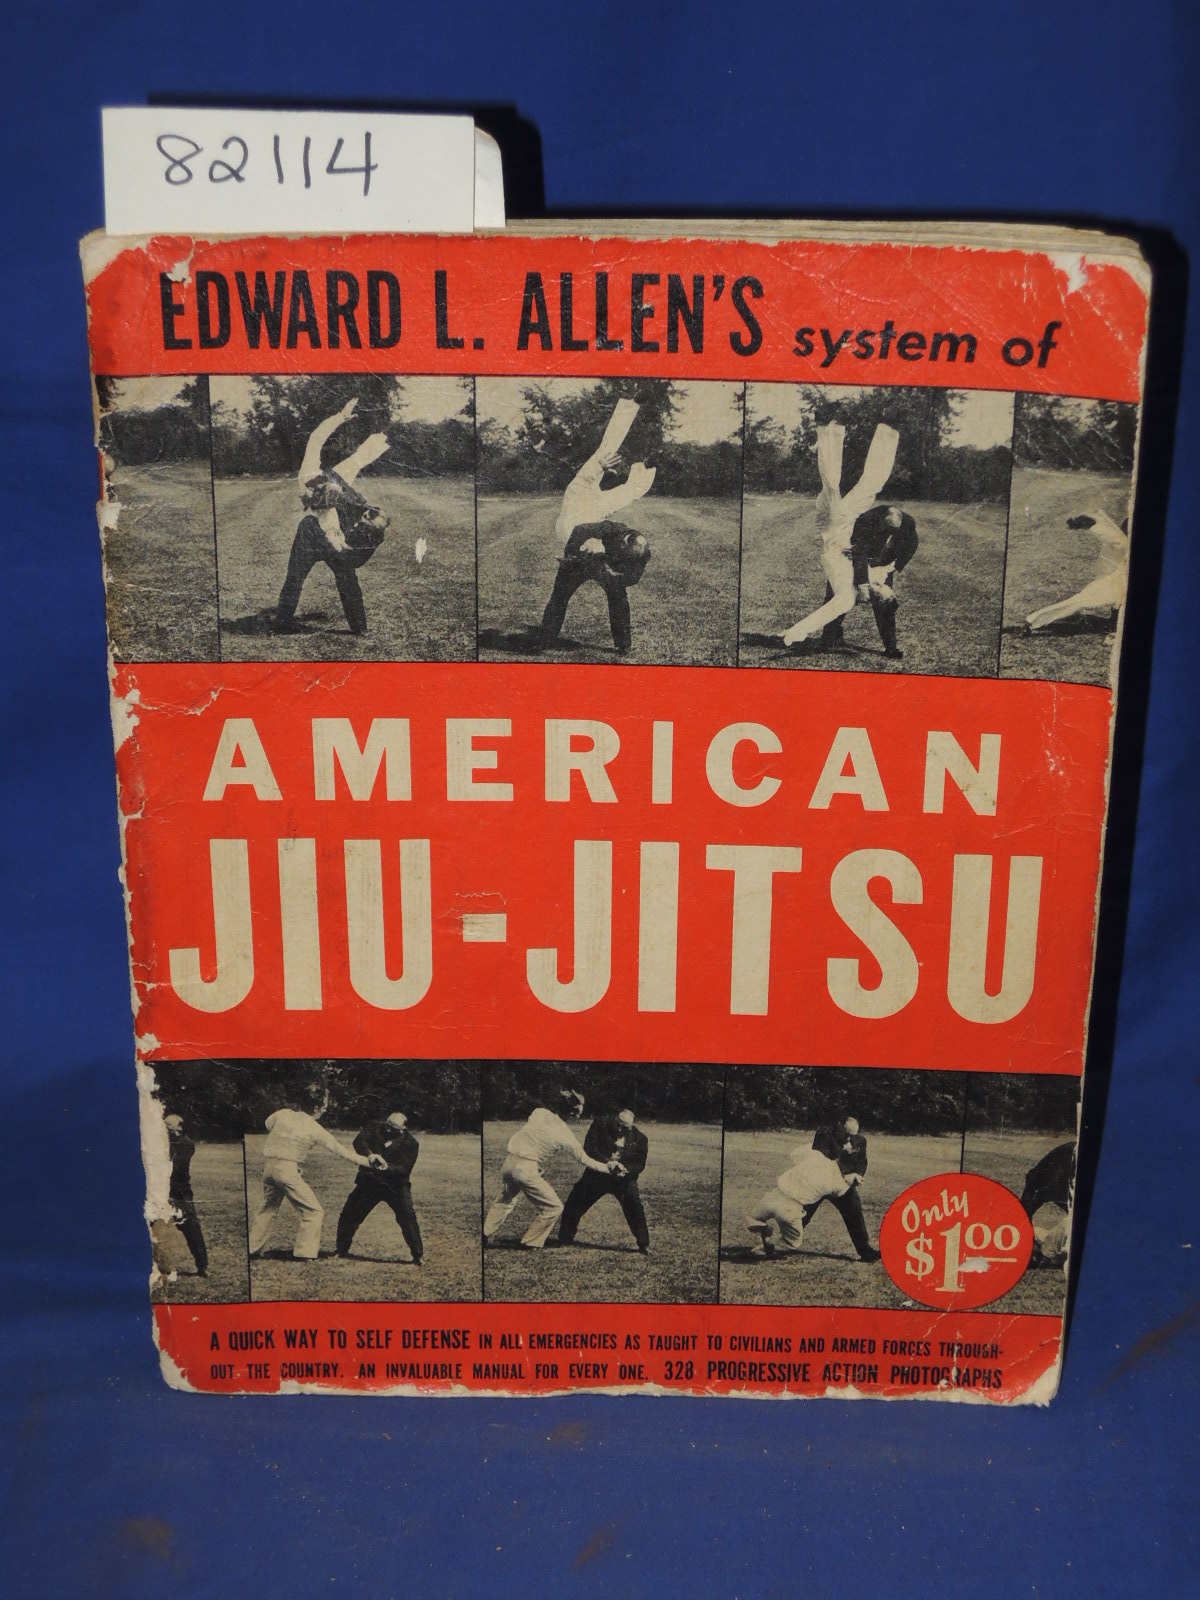 Allen, Edward L.: Jiu-Jitsu